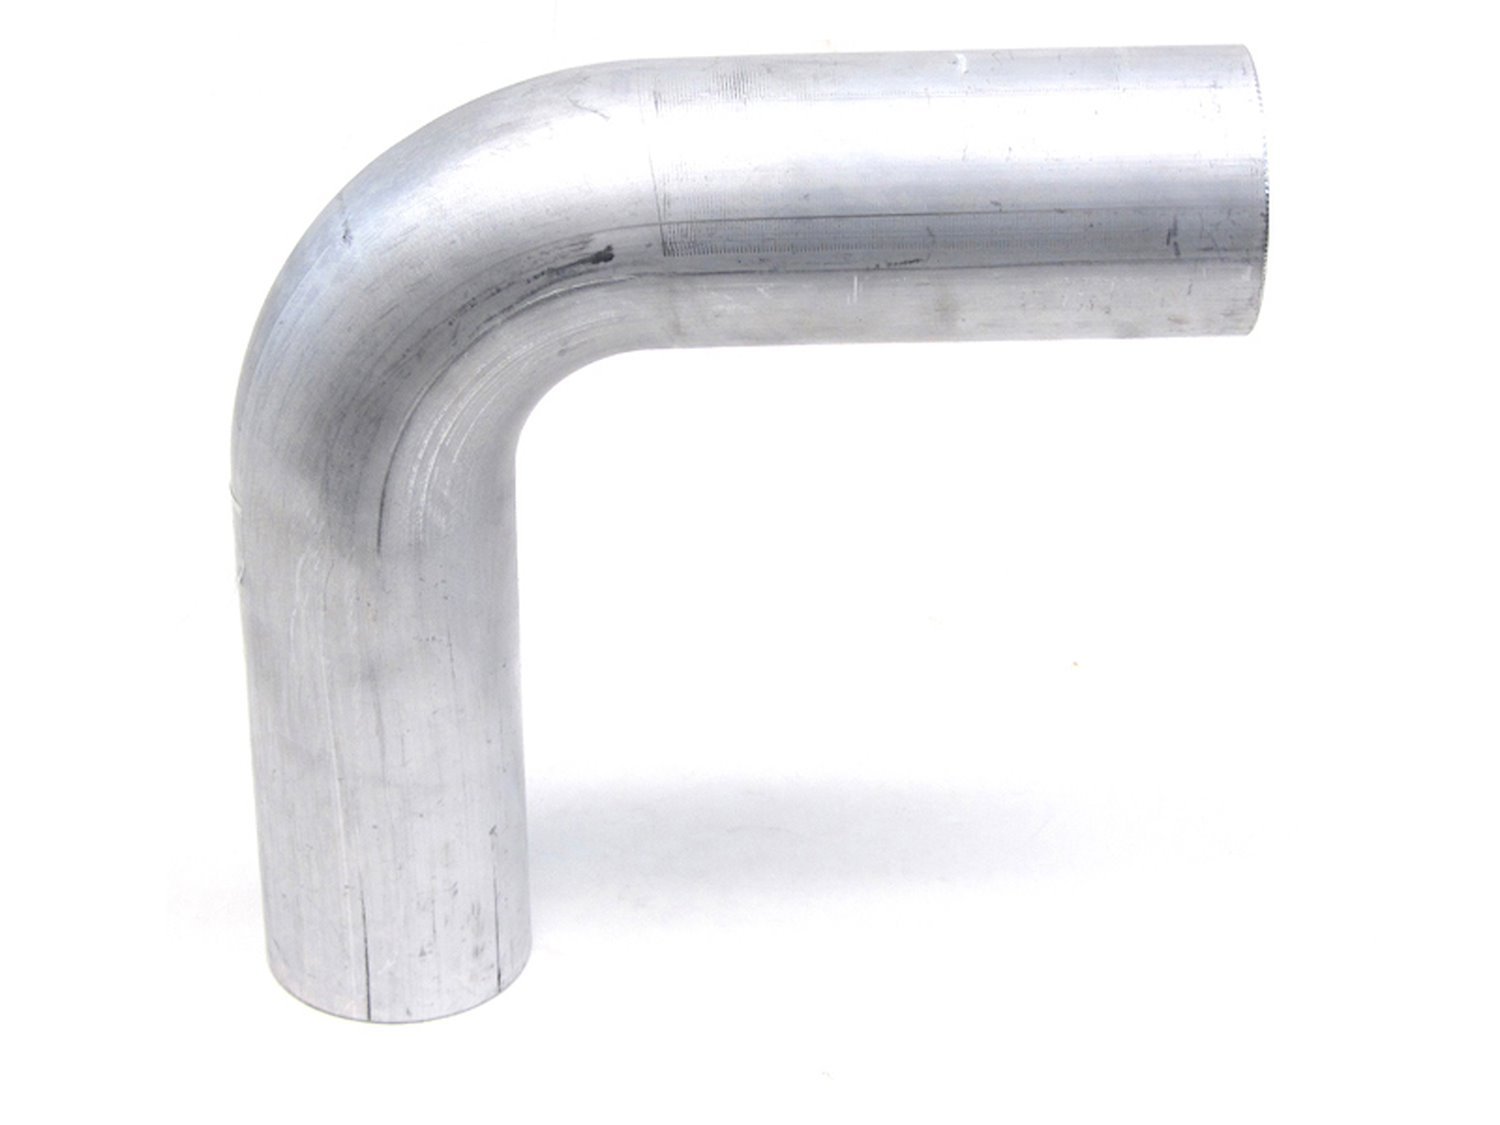 AT90-400-CLR-55 Aluminum Elbow Tube, 6061 Aluminum, 90-Degree Bend Elbow Tubing, 4 in. OD, Large Radius, 5-1/2 in. CLR